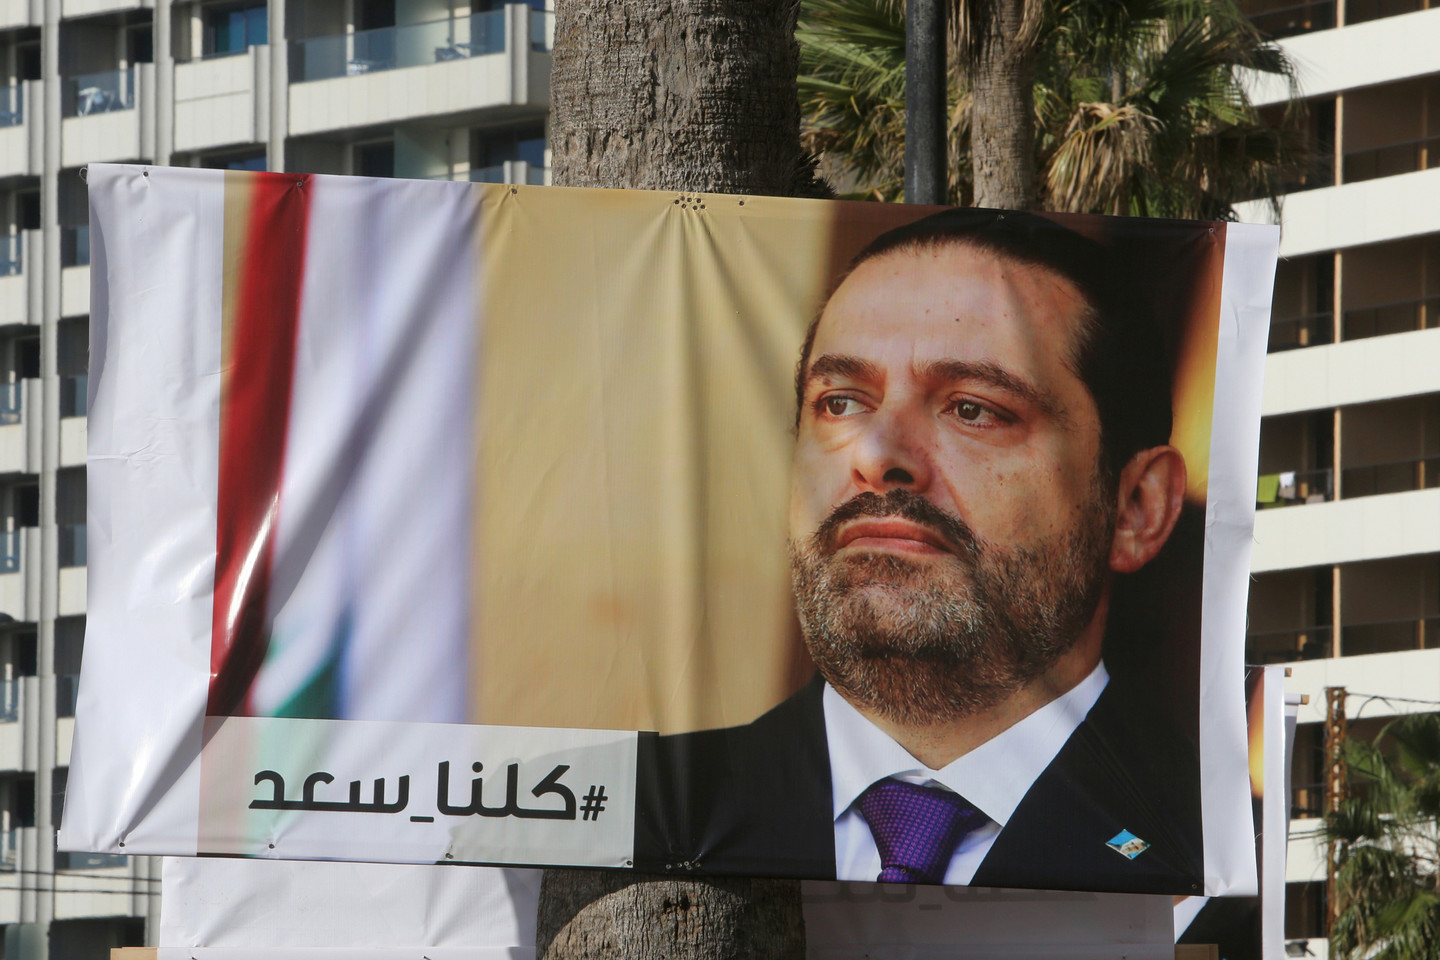 Politikas tvirtino artimiausiu metu planuojantis grįžti į Libaną.<br> Reutres/Scanpix nuotr.